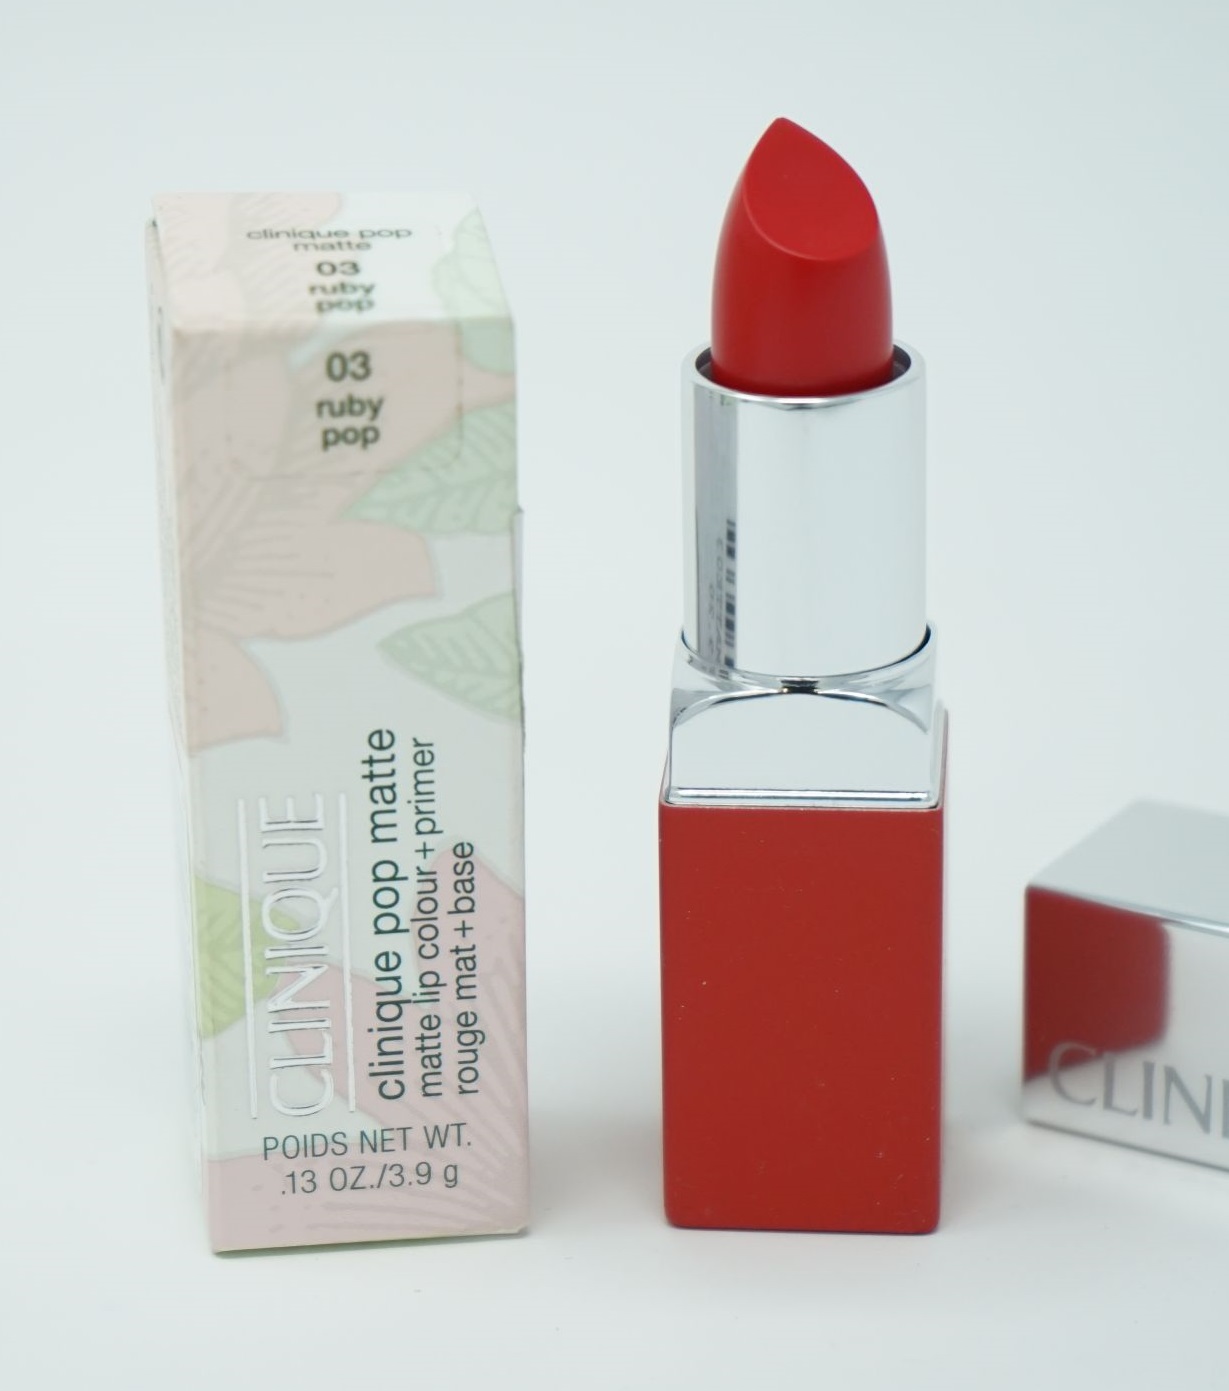 Clinique Pop Matte Lip Colour Lippenstift  3,9g / 03 ruby pop